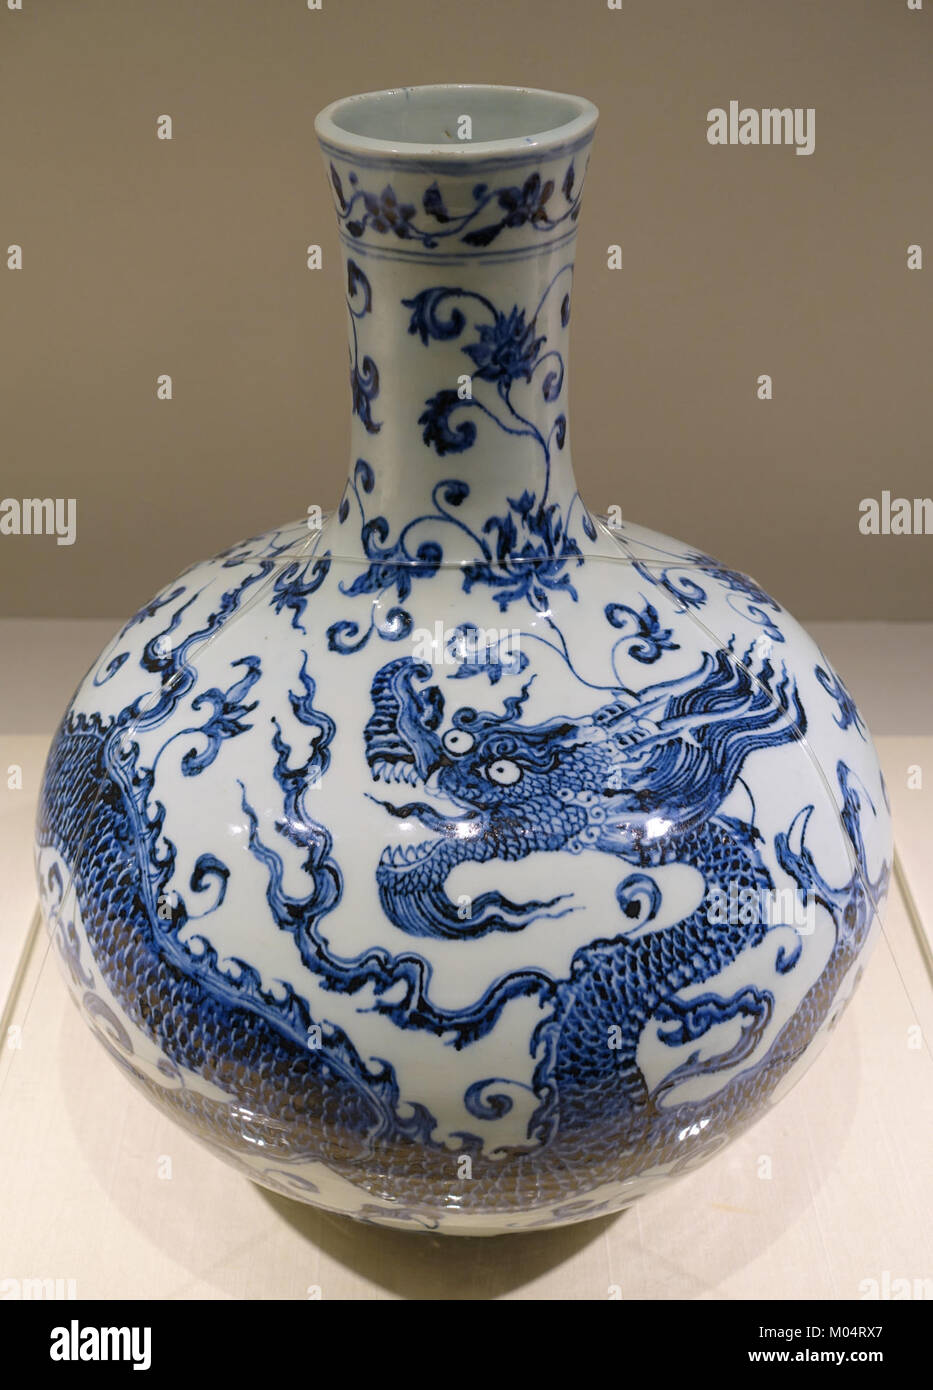 Vaso bottiglia con dragon e design arabesque, Cina, Jingdezhen forno, dinastia Ming, periodo Yongle, 1403-1424 annuncio, blu e bianco - Matsuoka Museum of Art - Tokyo, Giappone - DSC07353 Foto Stock